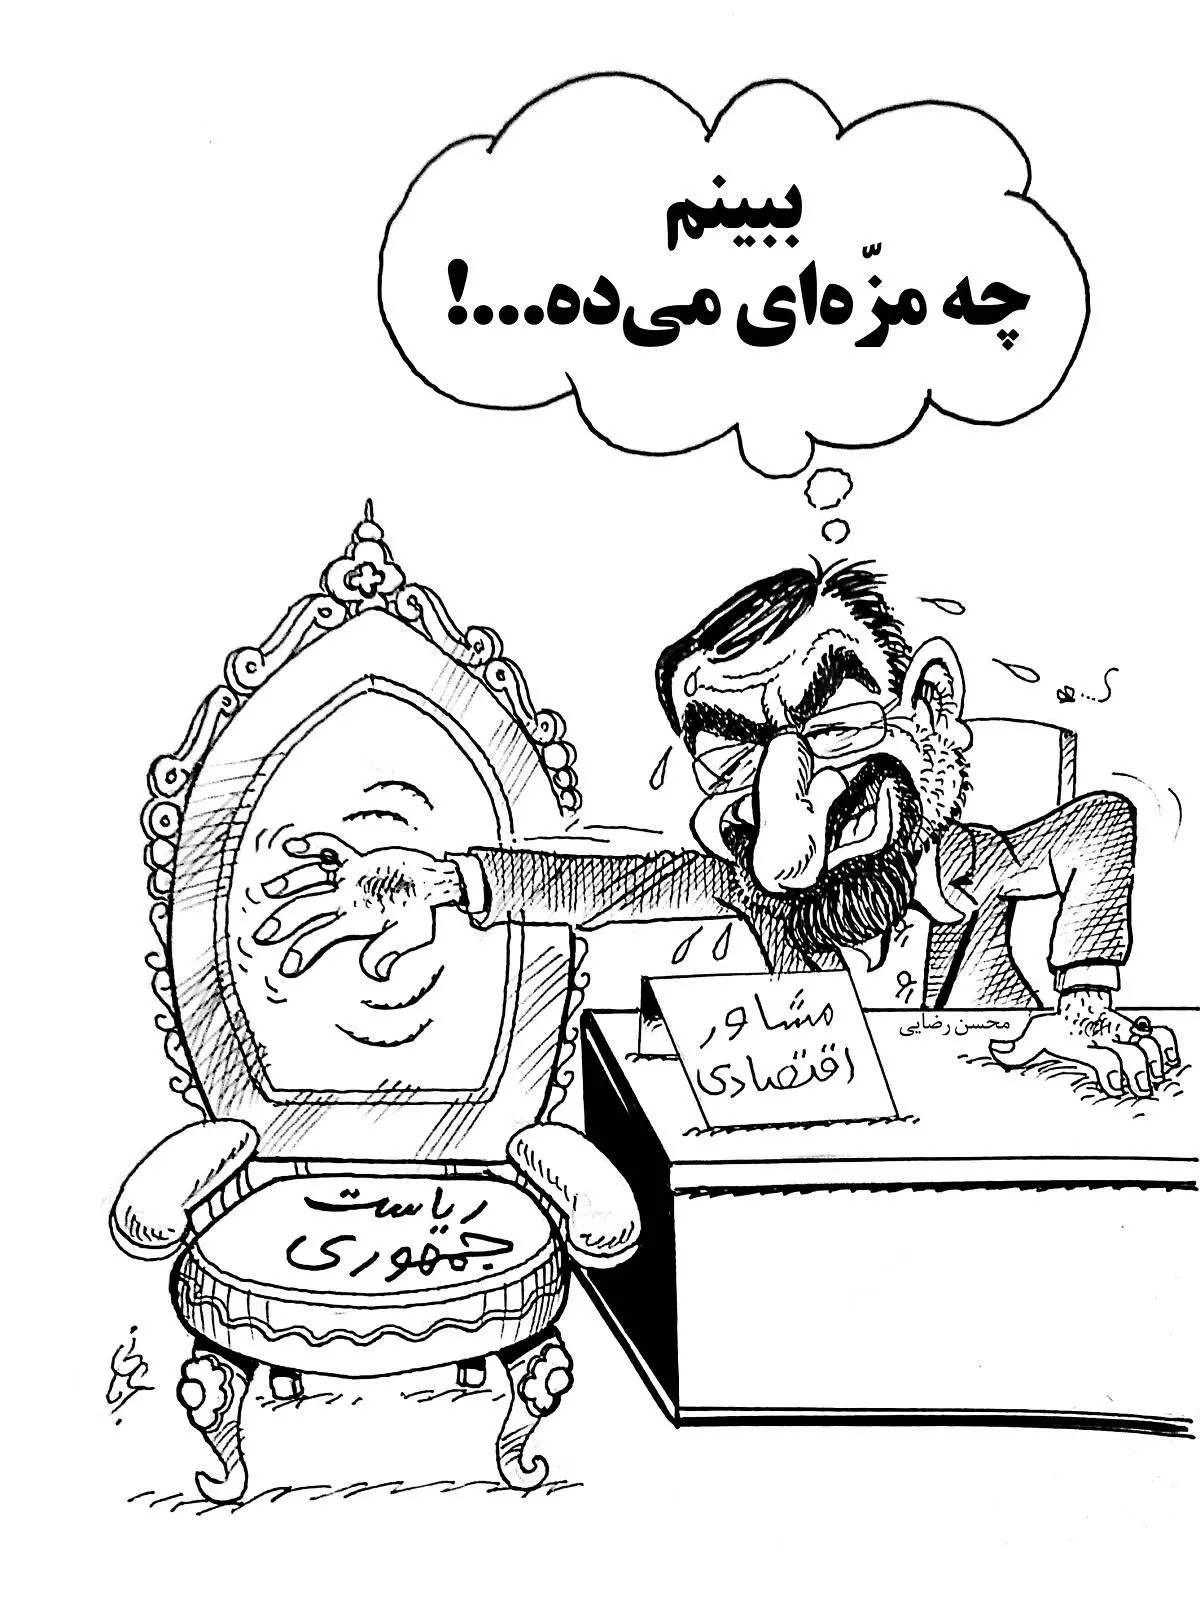 کارتون درباره محسن رضایی